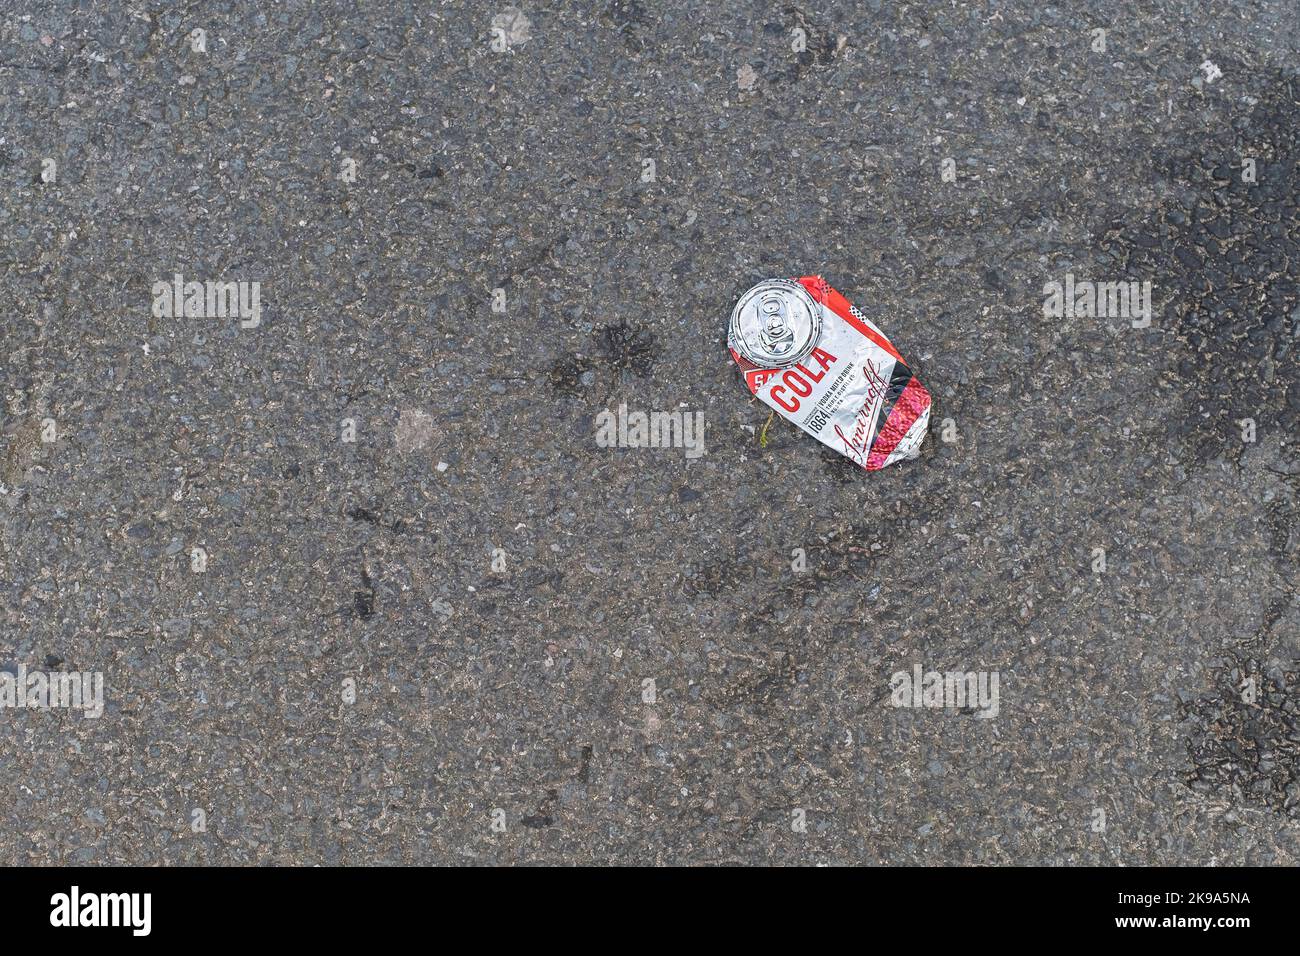 Una bevanda appiattita Smirnoff Cola e Vodka può su una strada in Cornovaglia nel Regno Unito. Foto Stock